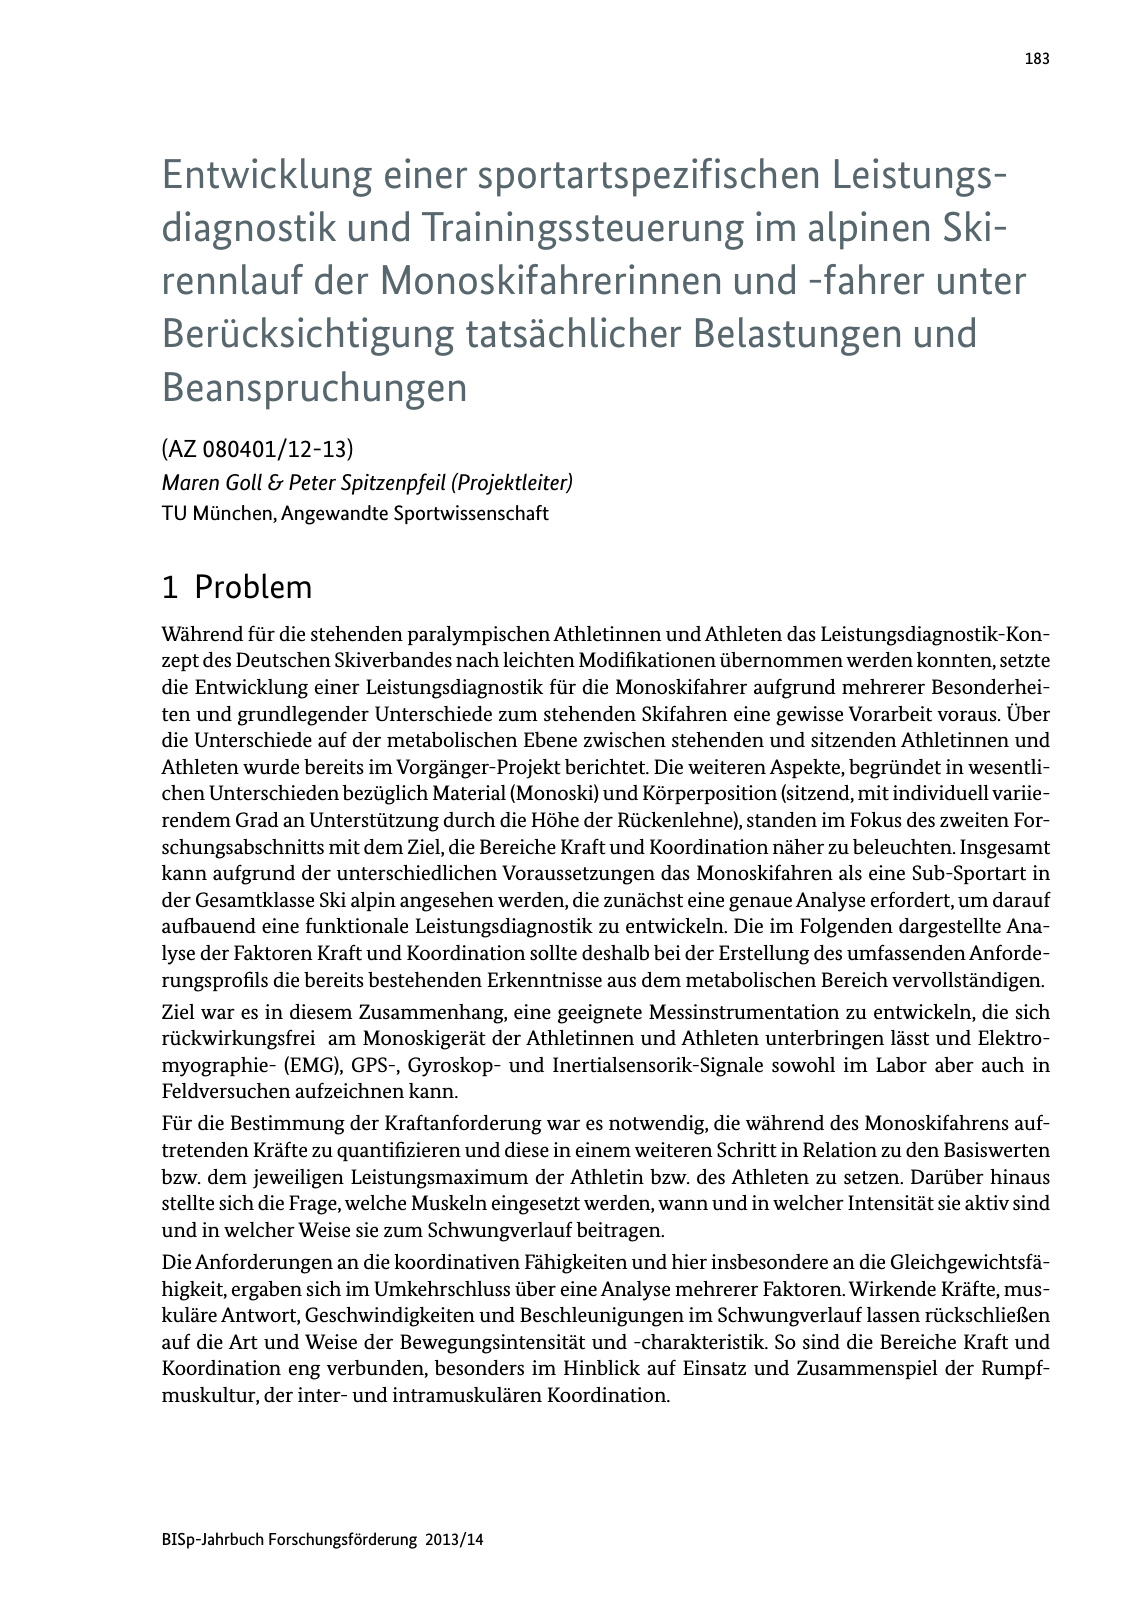 Vorschau BISp-Jahrbuch Forschungsförderung 2013/14 Seite 184